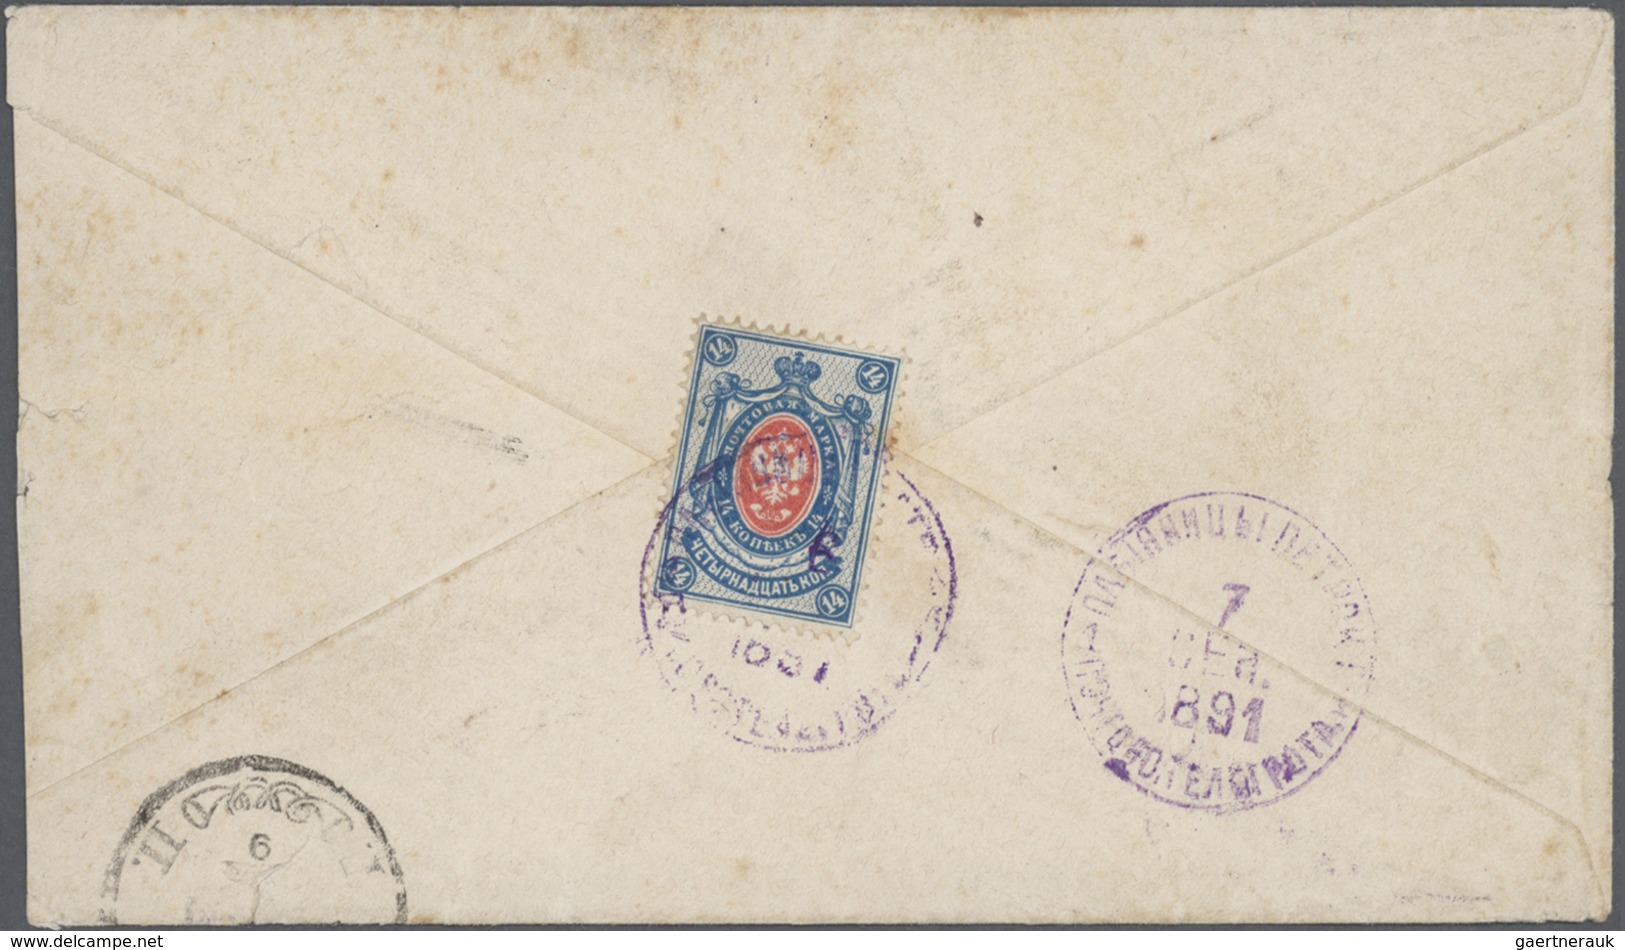 Br Russland: 1850/1950ca., hochwertiger Briefebestand aus Uralt-Nachlass mit vielen interessanten und g